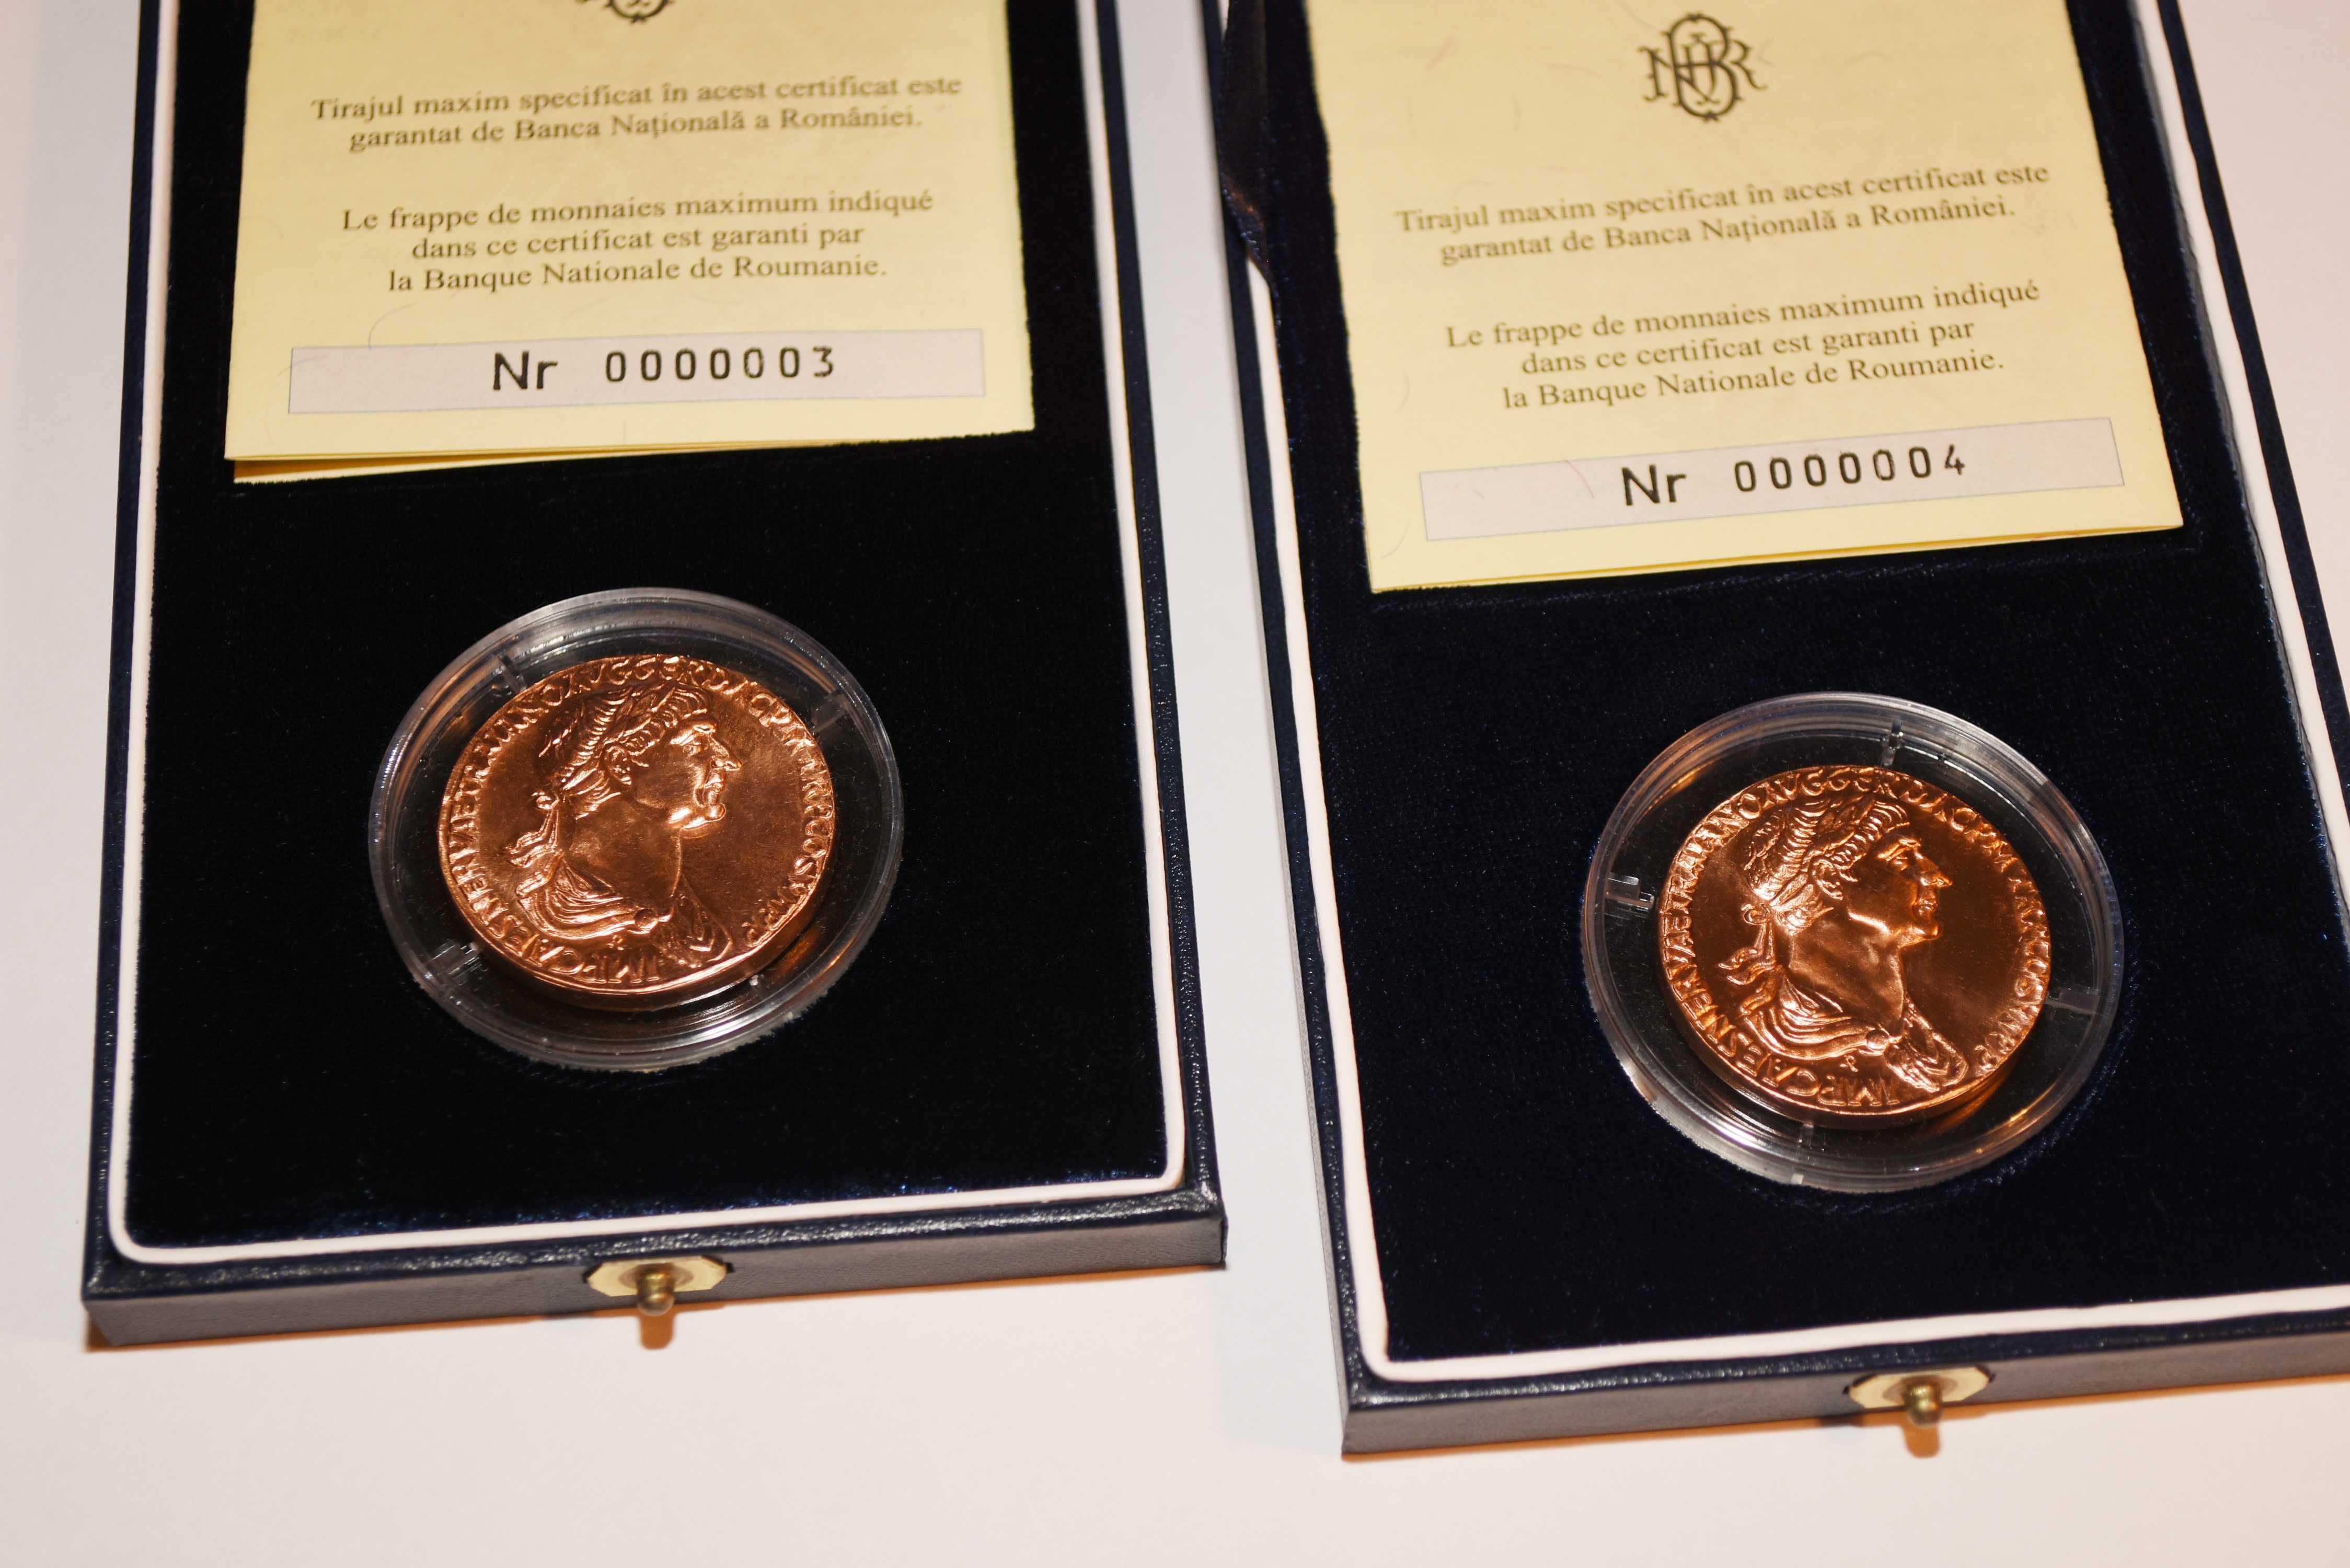 Monedă BNR - sestert emis de Împăratul Traian